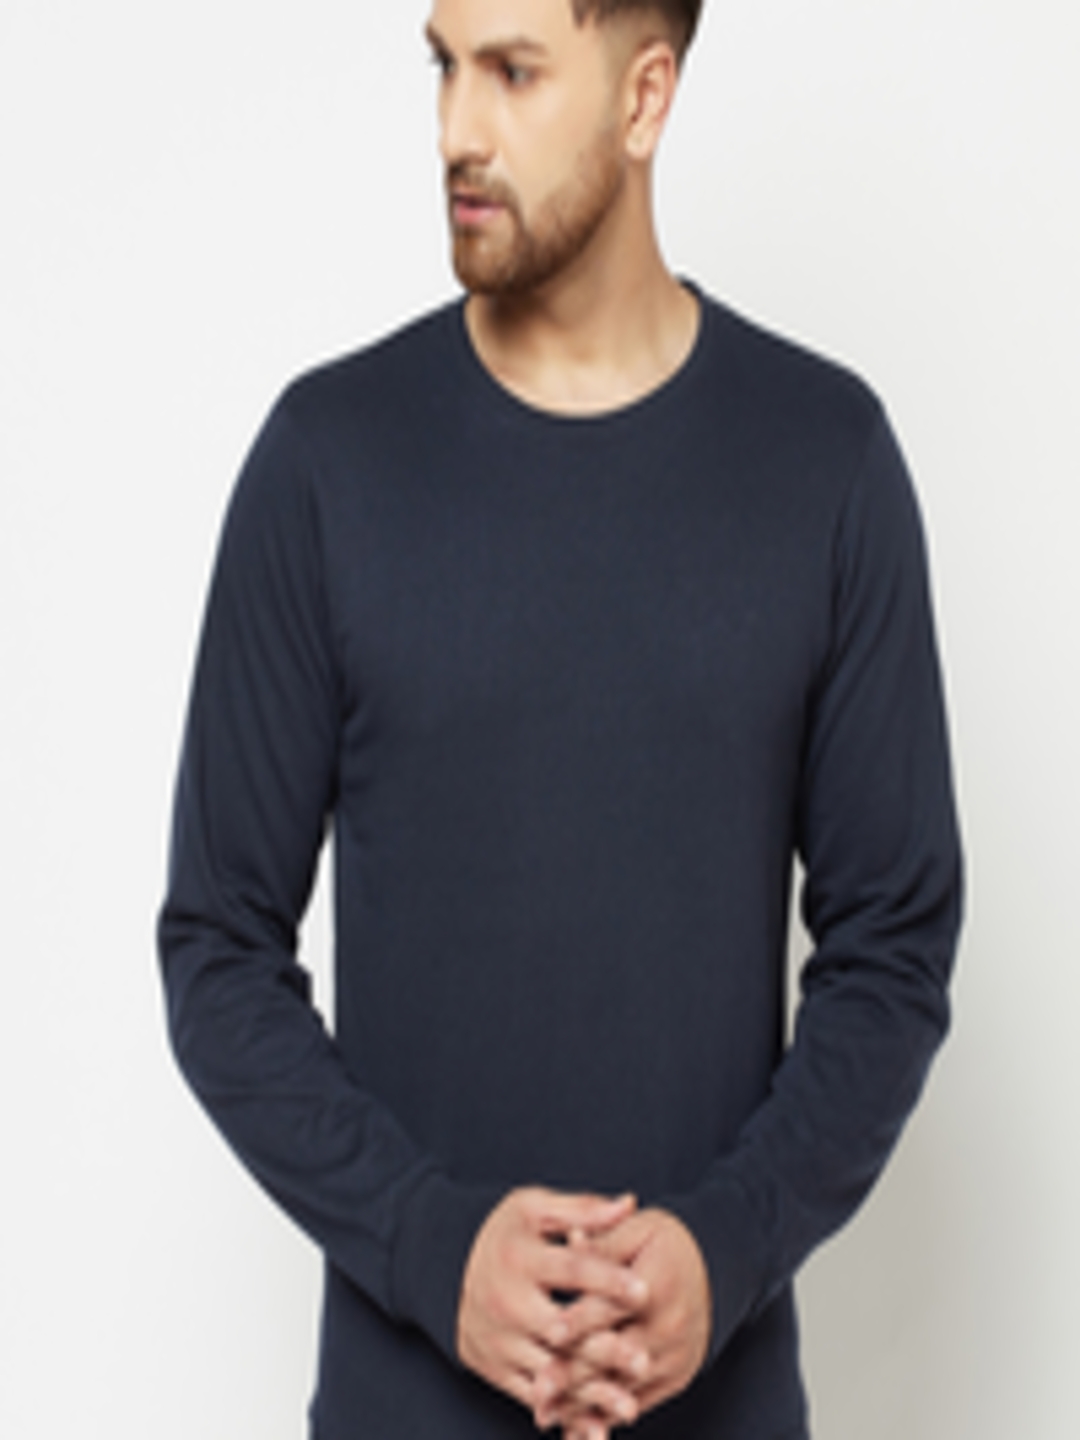 Buy ELEGANCE Men Navy Blue Solid Sweatshirt - Sweatshirts for Men ...